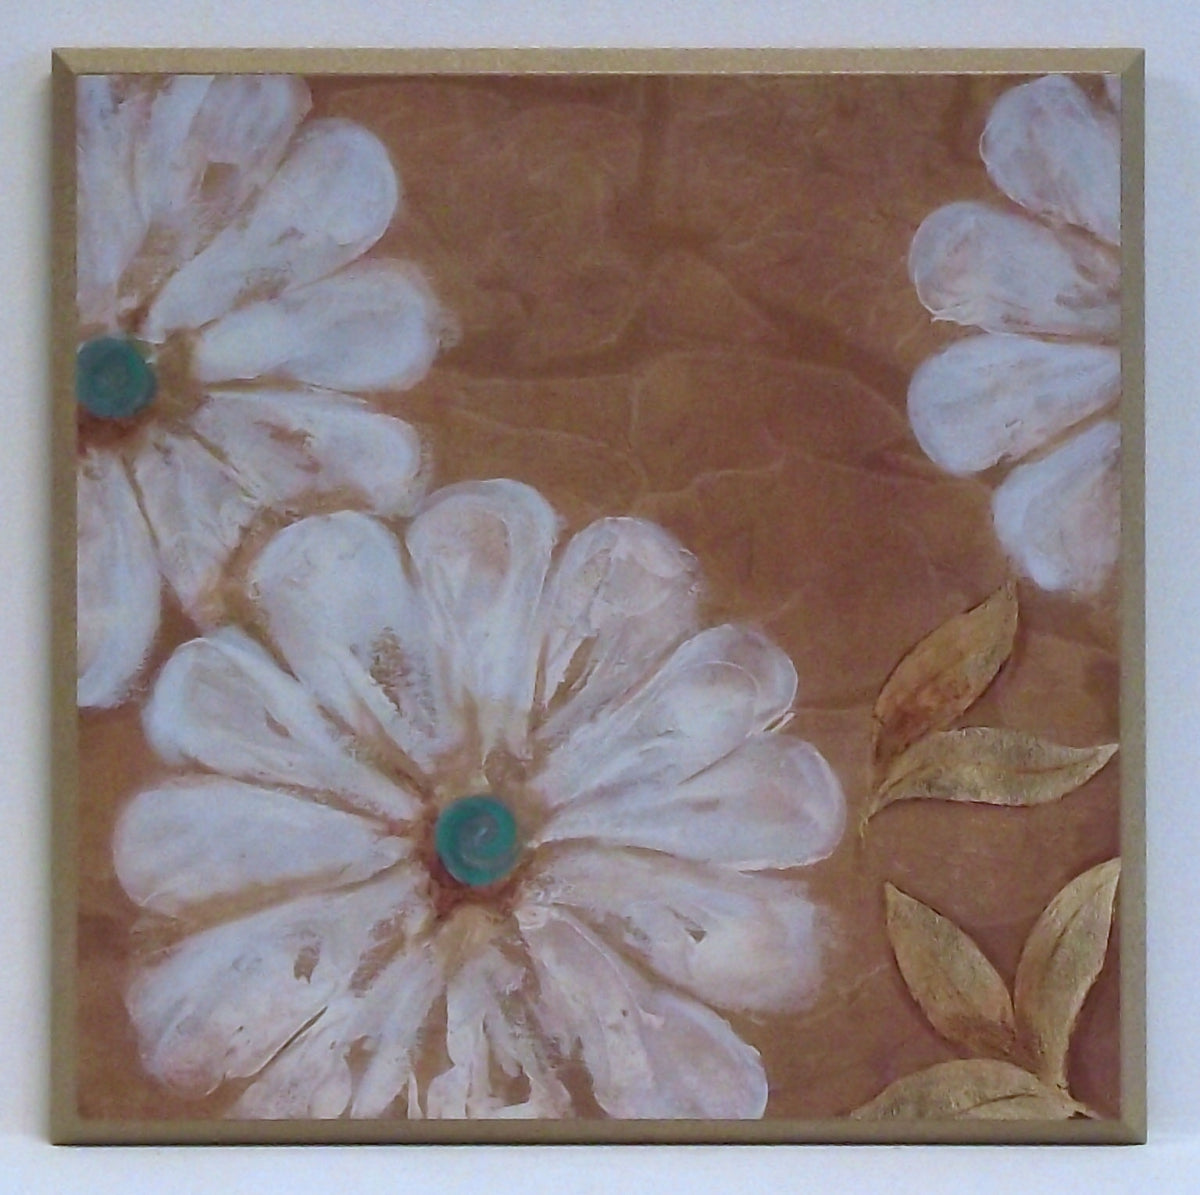 Obraz - Duże białe kwiaty - reprodukcja na płycie A9916 31x31 cm - Obrazy Reprodukcje Ramy | ergopaul.pl